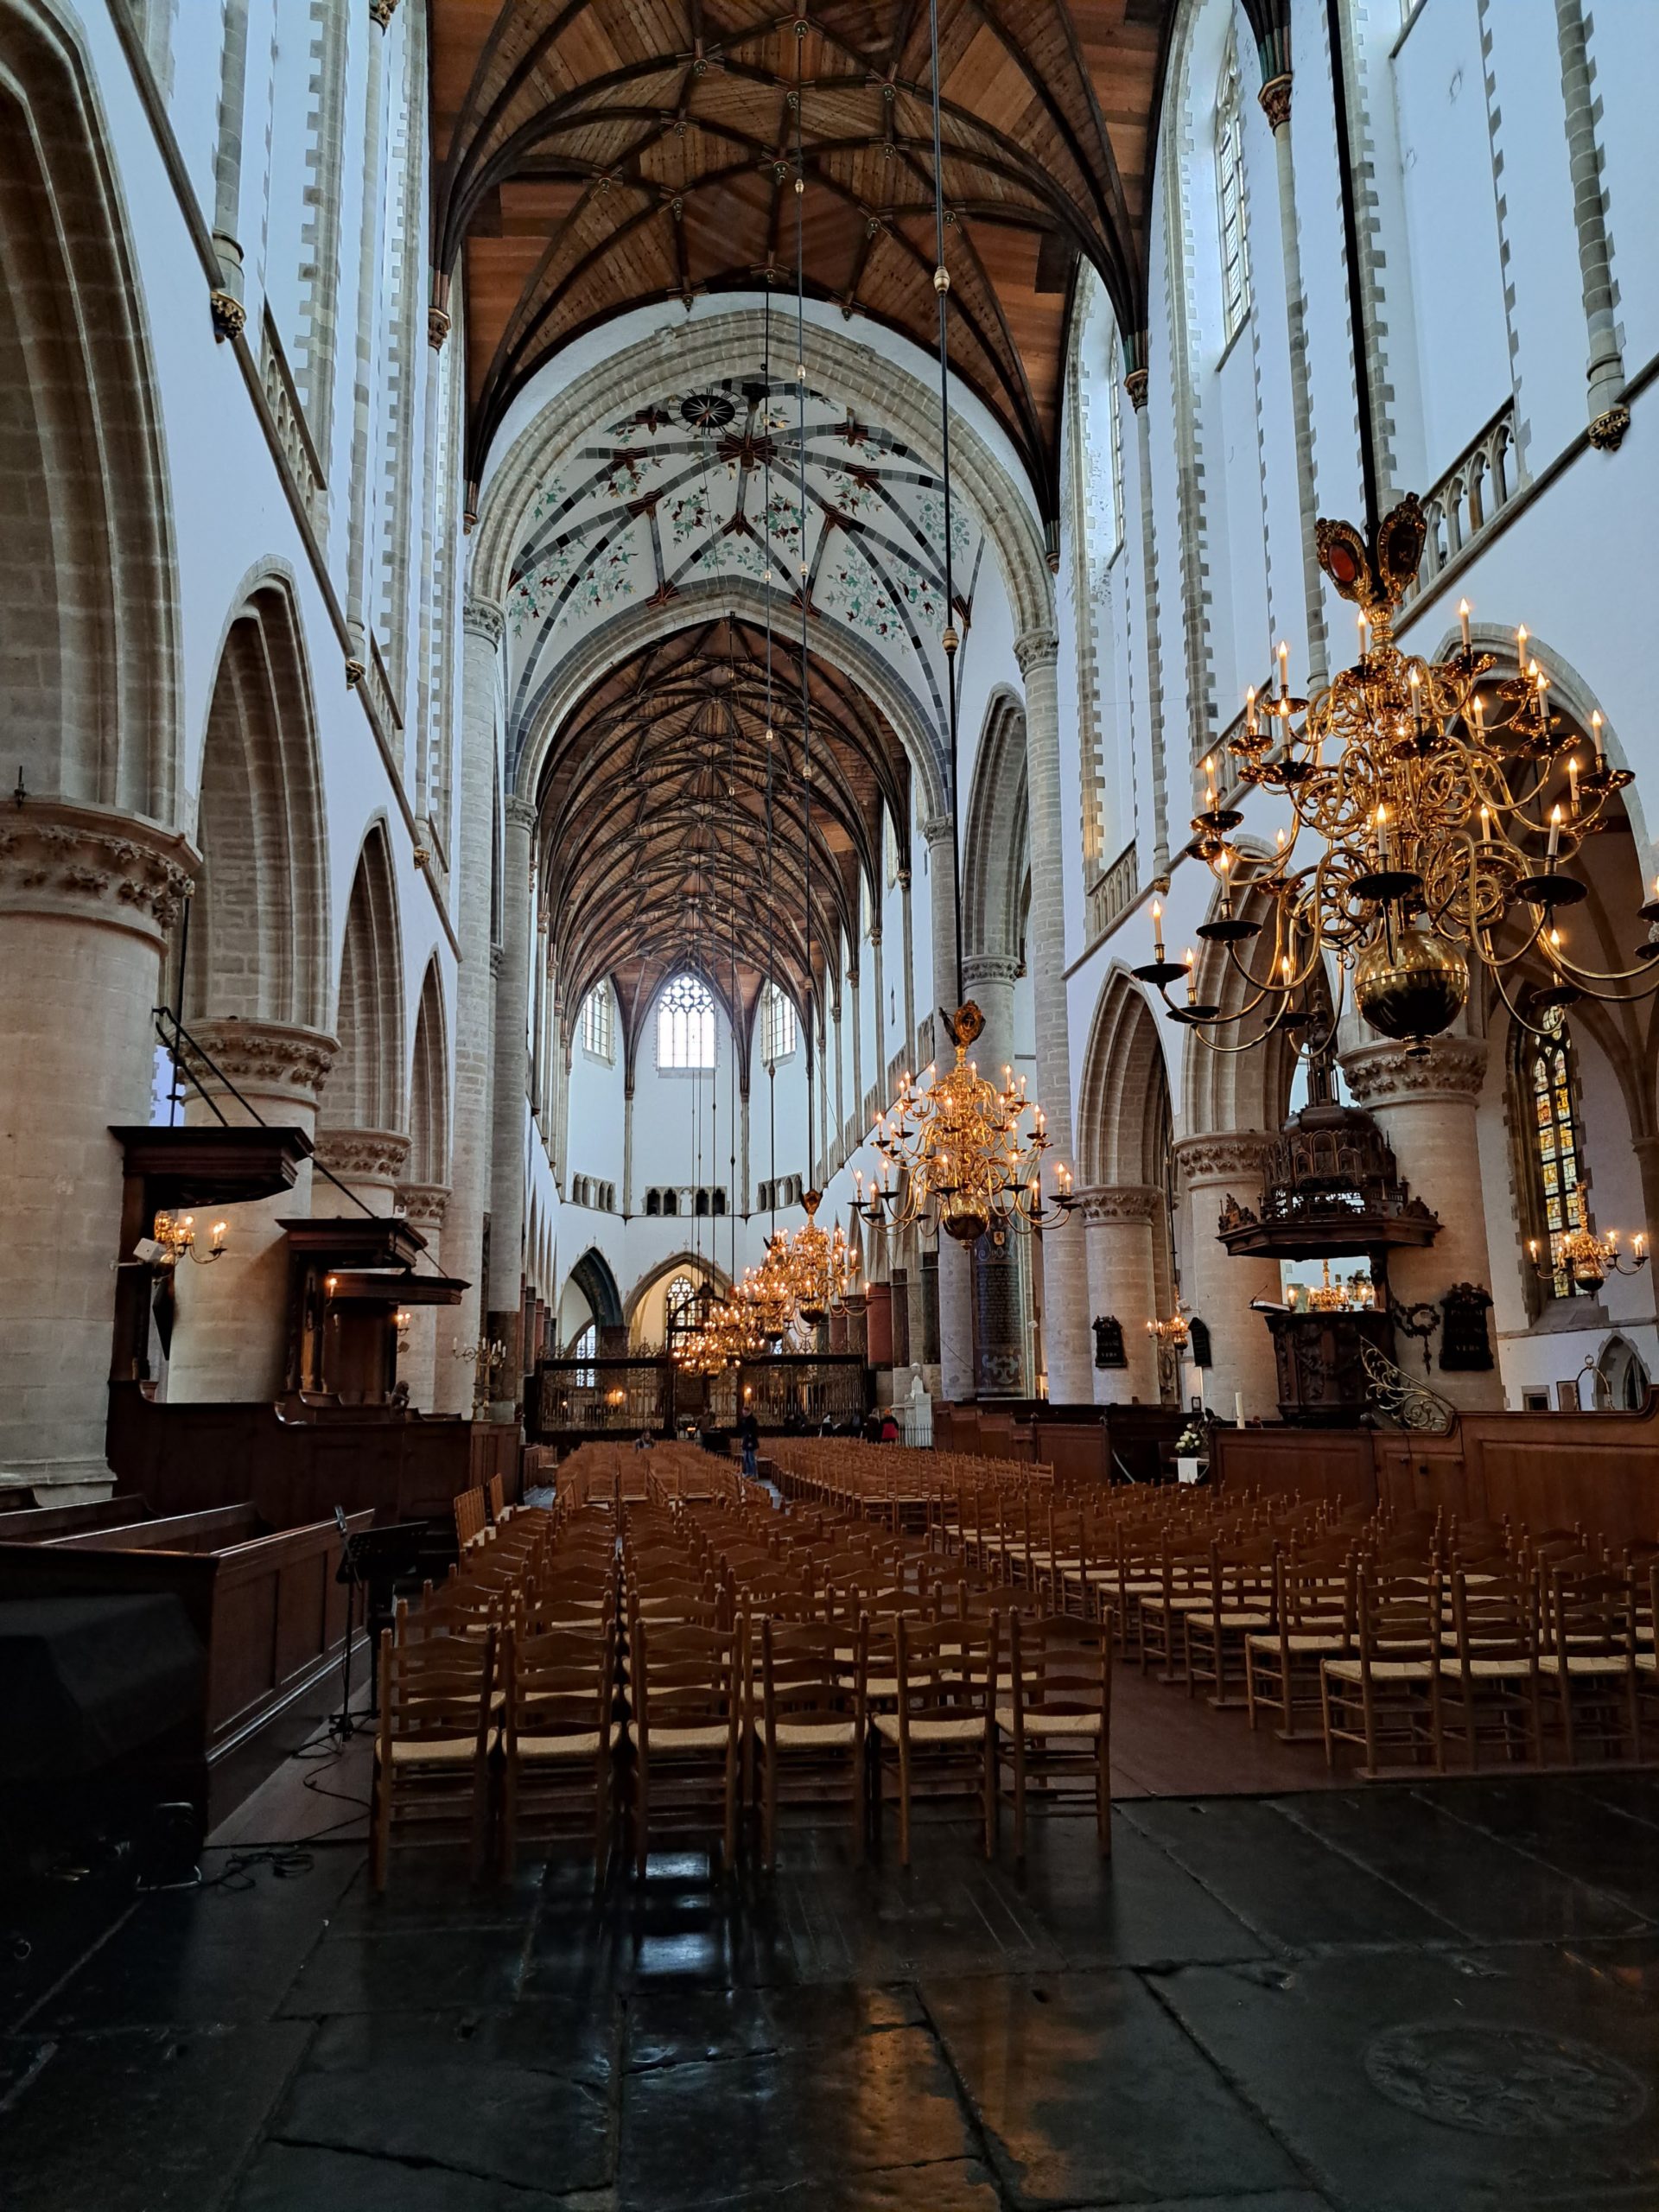 Interieur van de Grote of St. Bavokerk in Haarlem